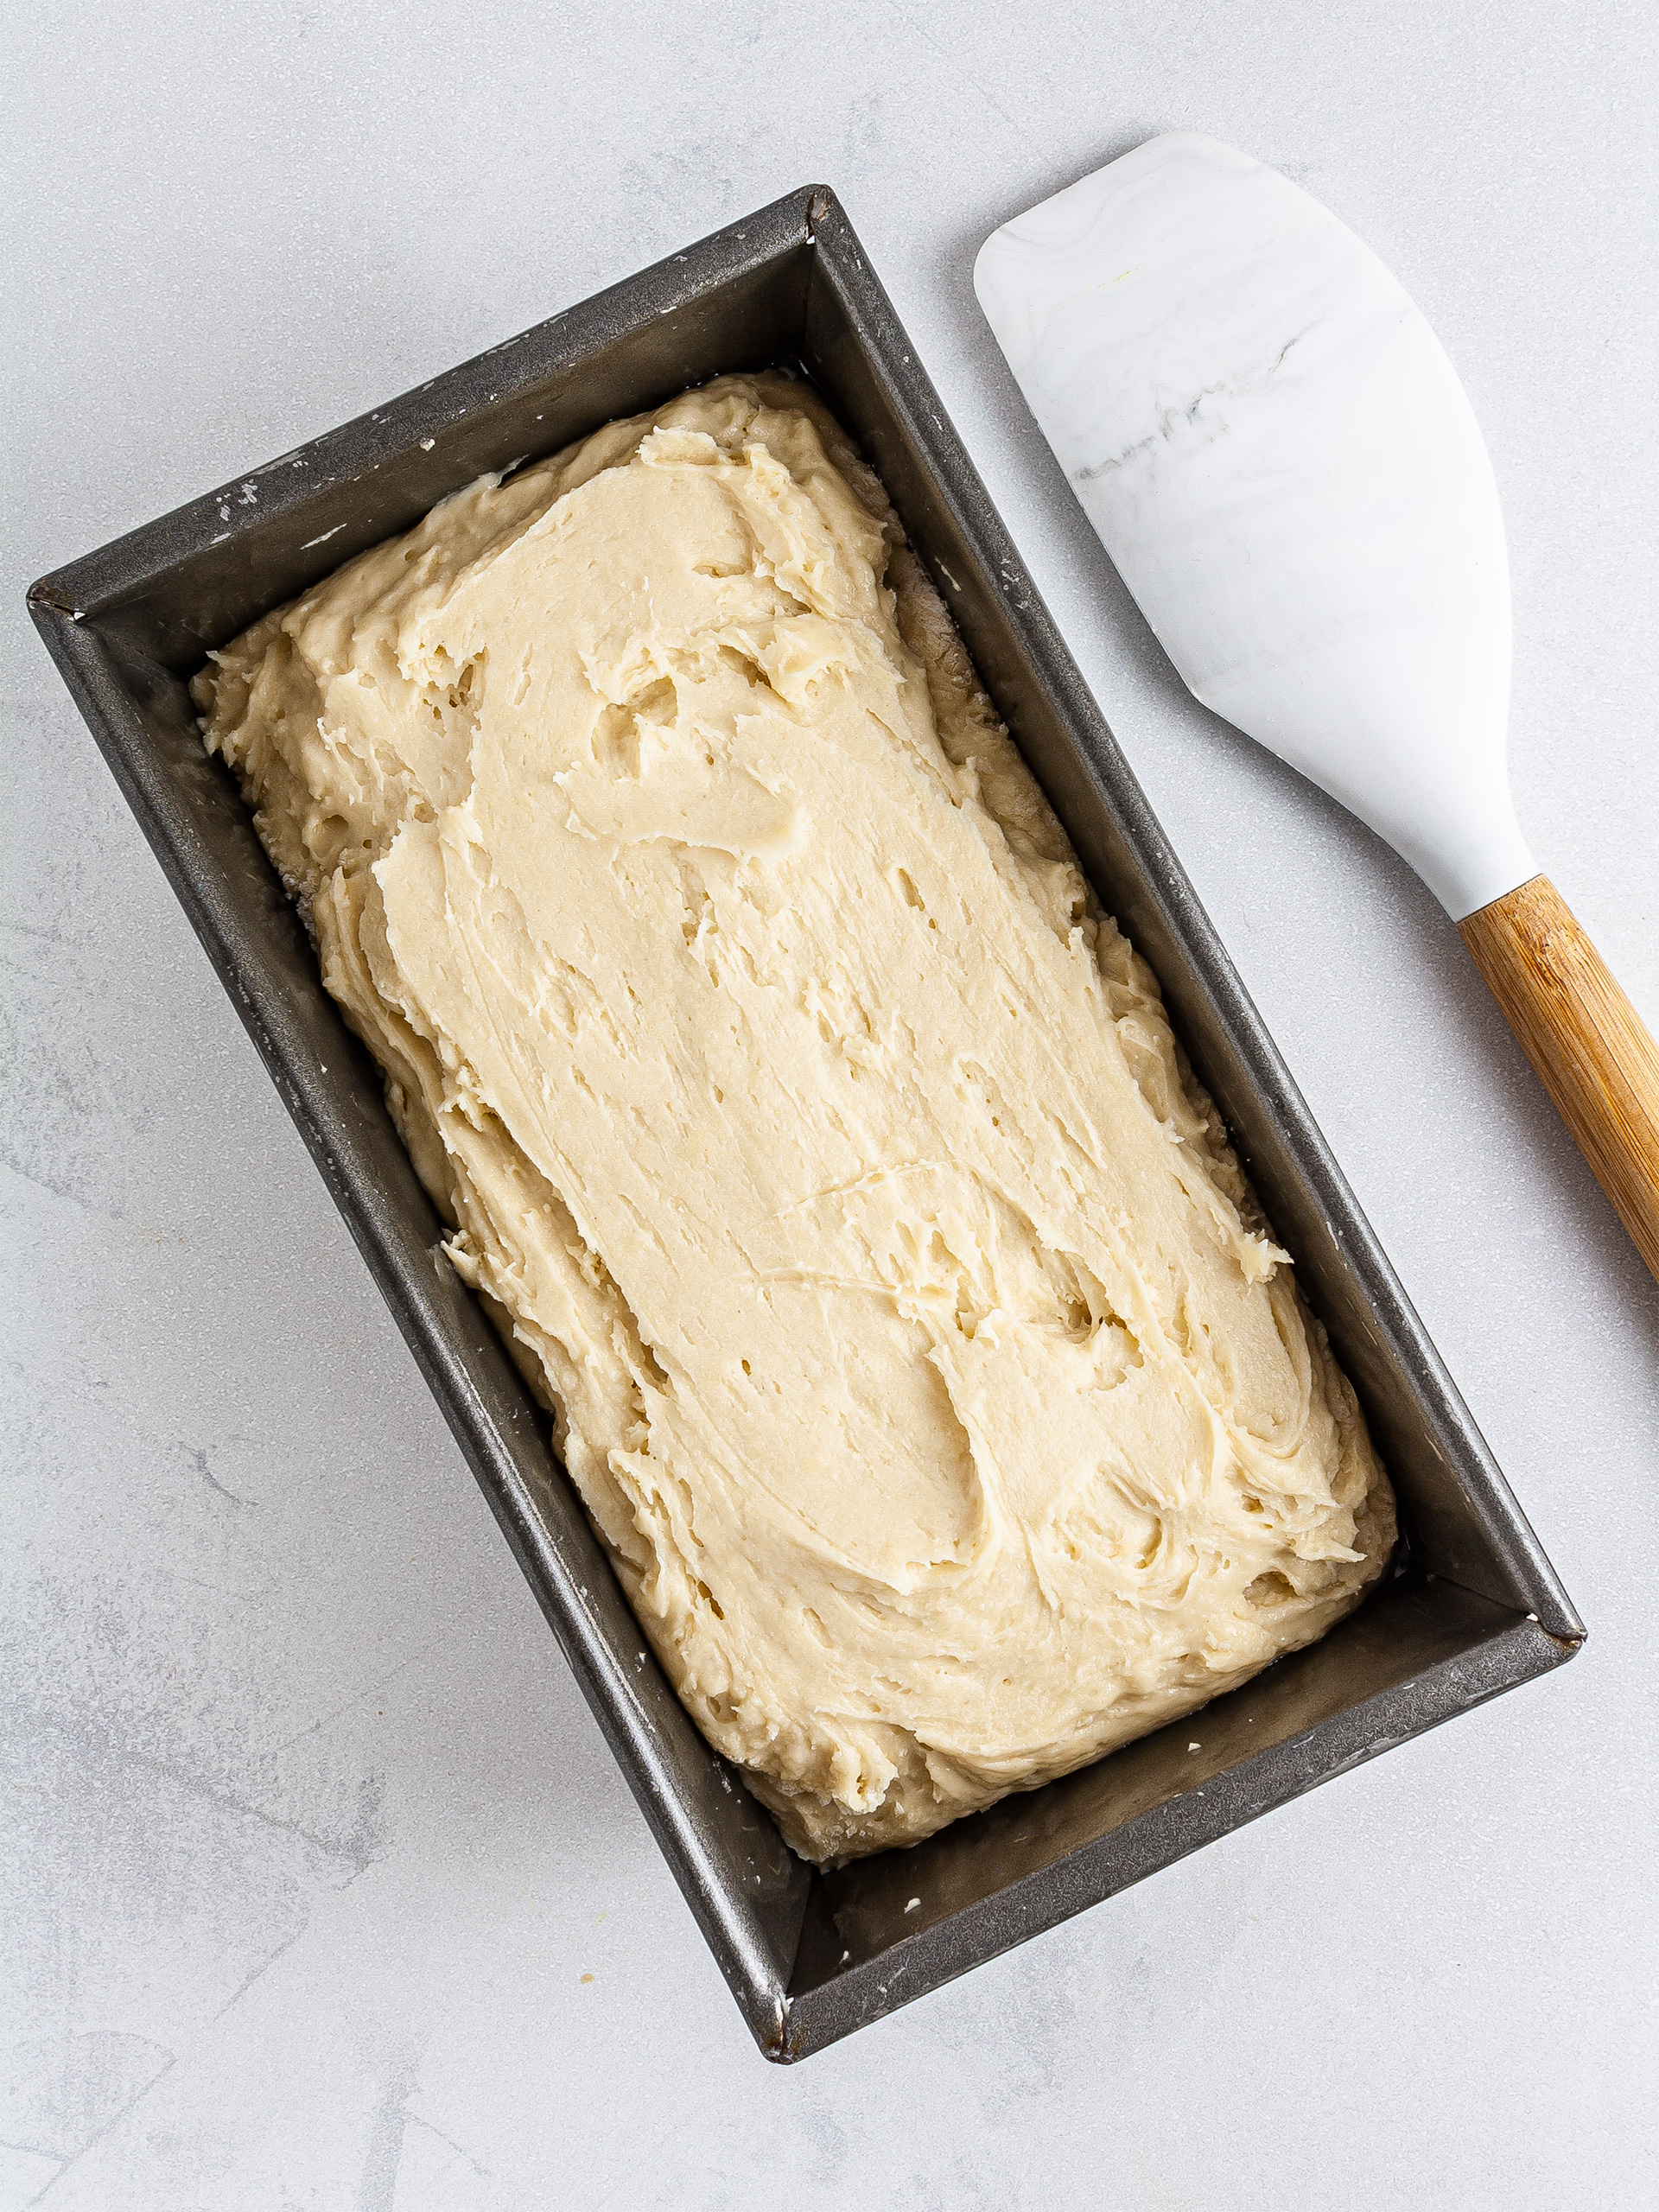 Brioche dough in a loaf tin